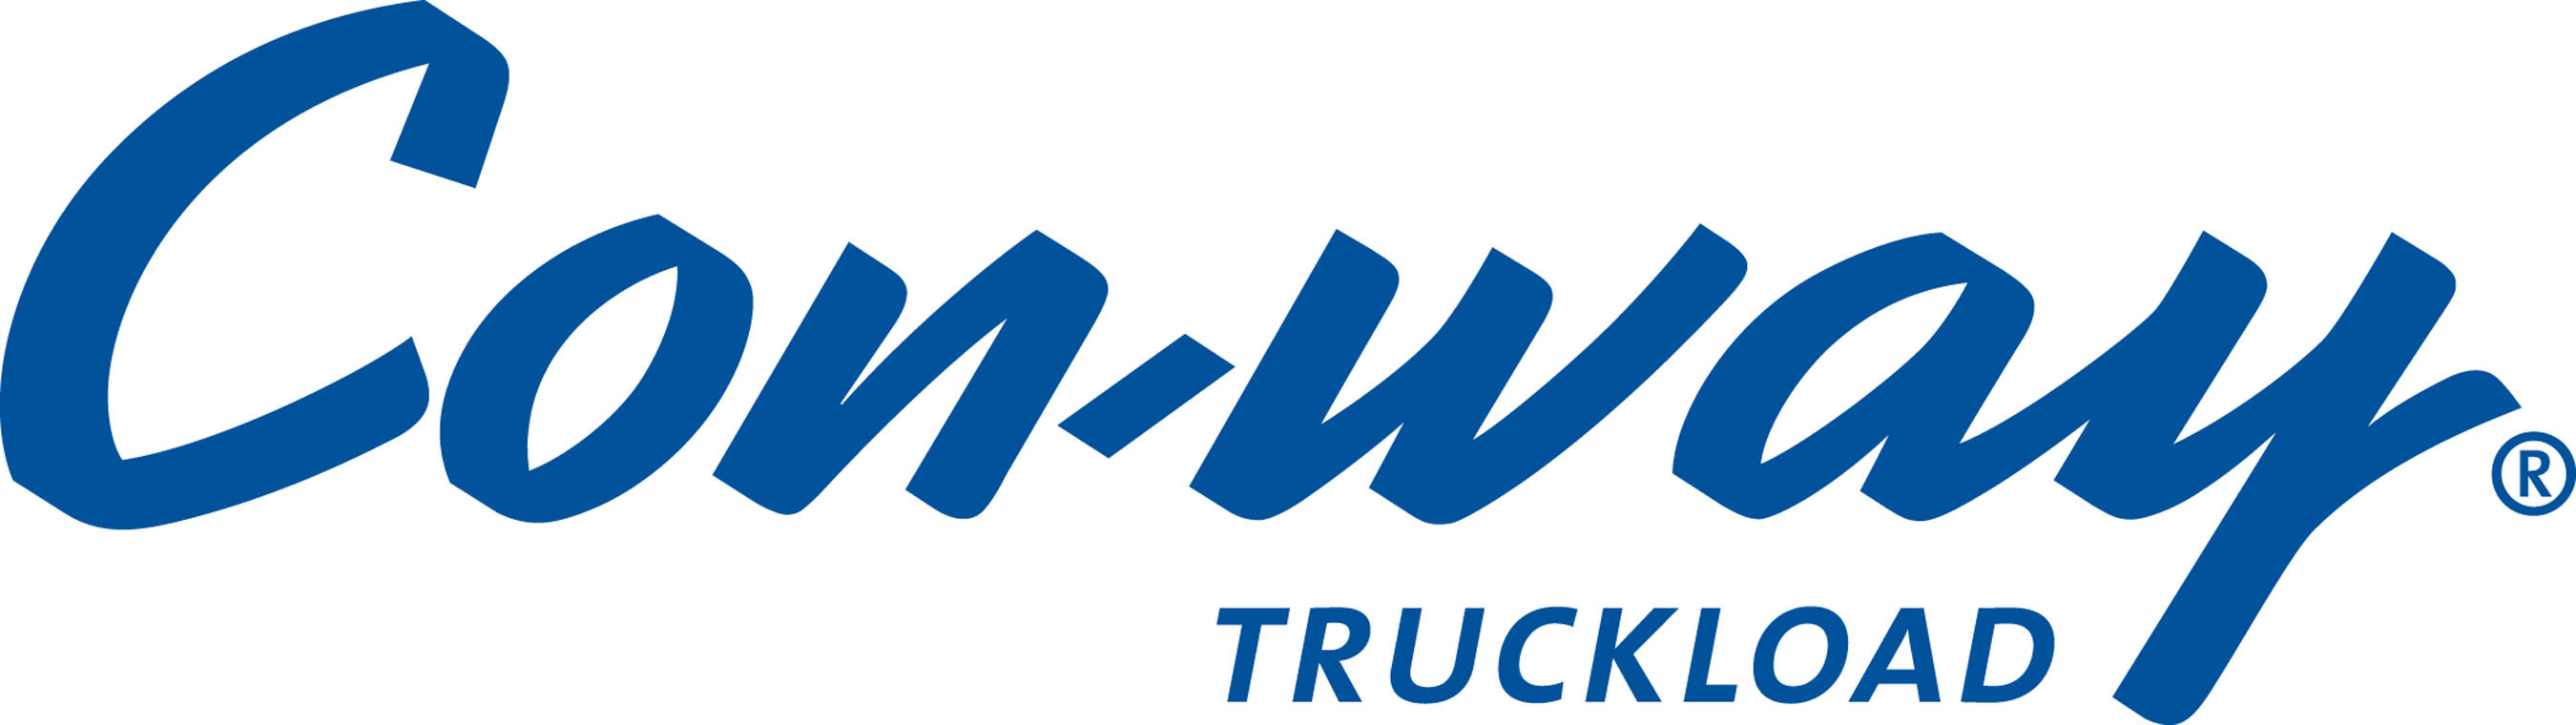 Con-way Truckload Logo